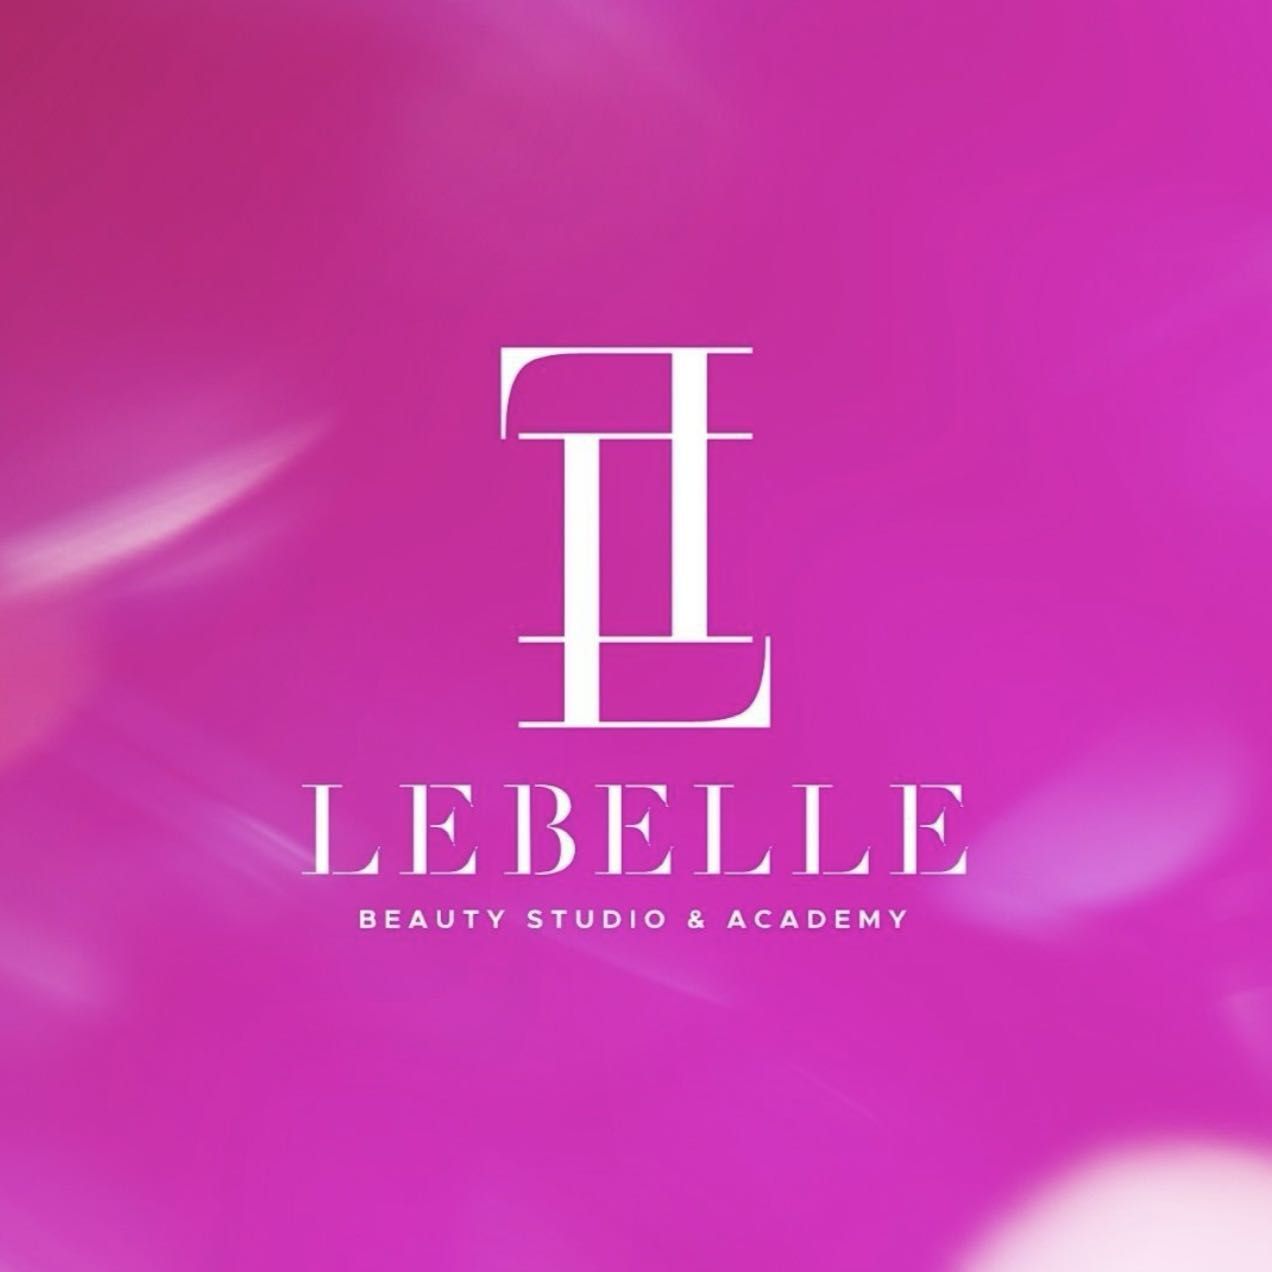 Le Belle Aesthetics & Laser, 16131 Lancaster hwy suite 160, Charlotte, 28277